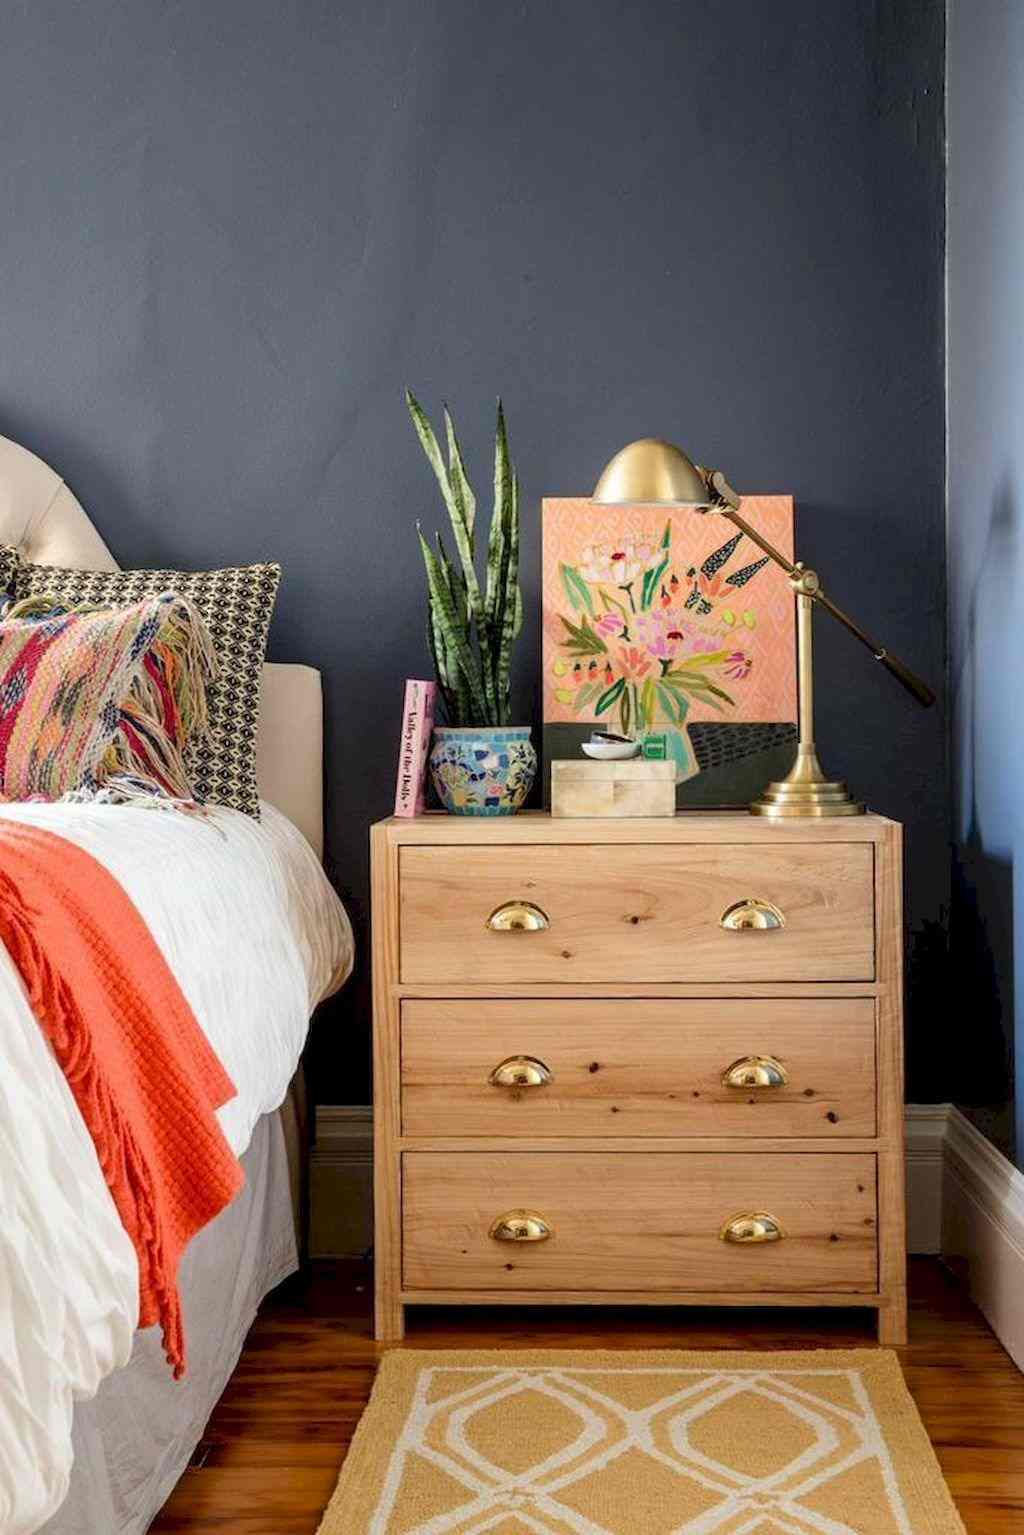 Träbord sängbord dekoration treskåp krukväxt matta grå vägg färg modern